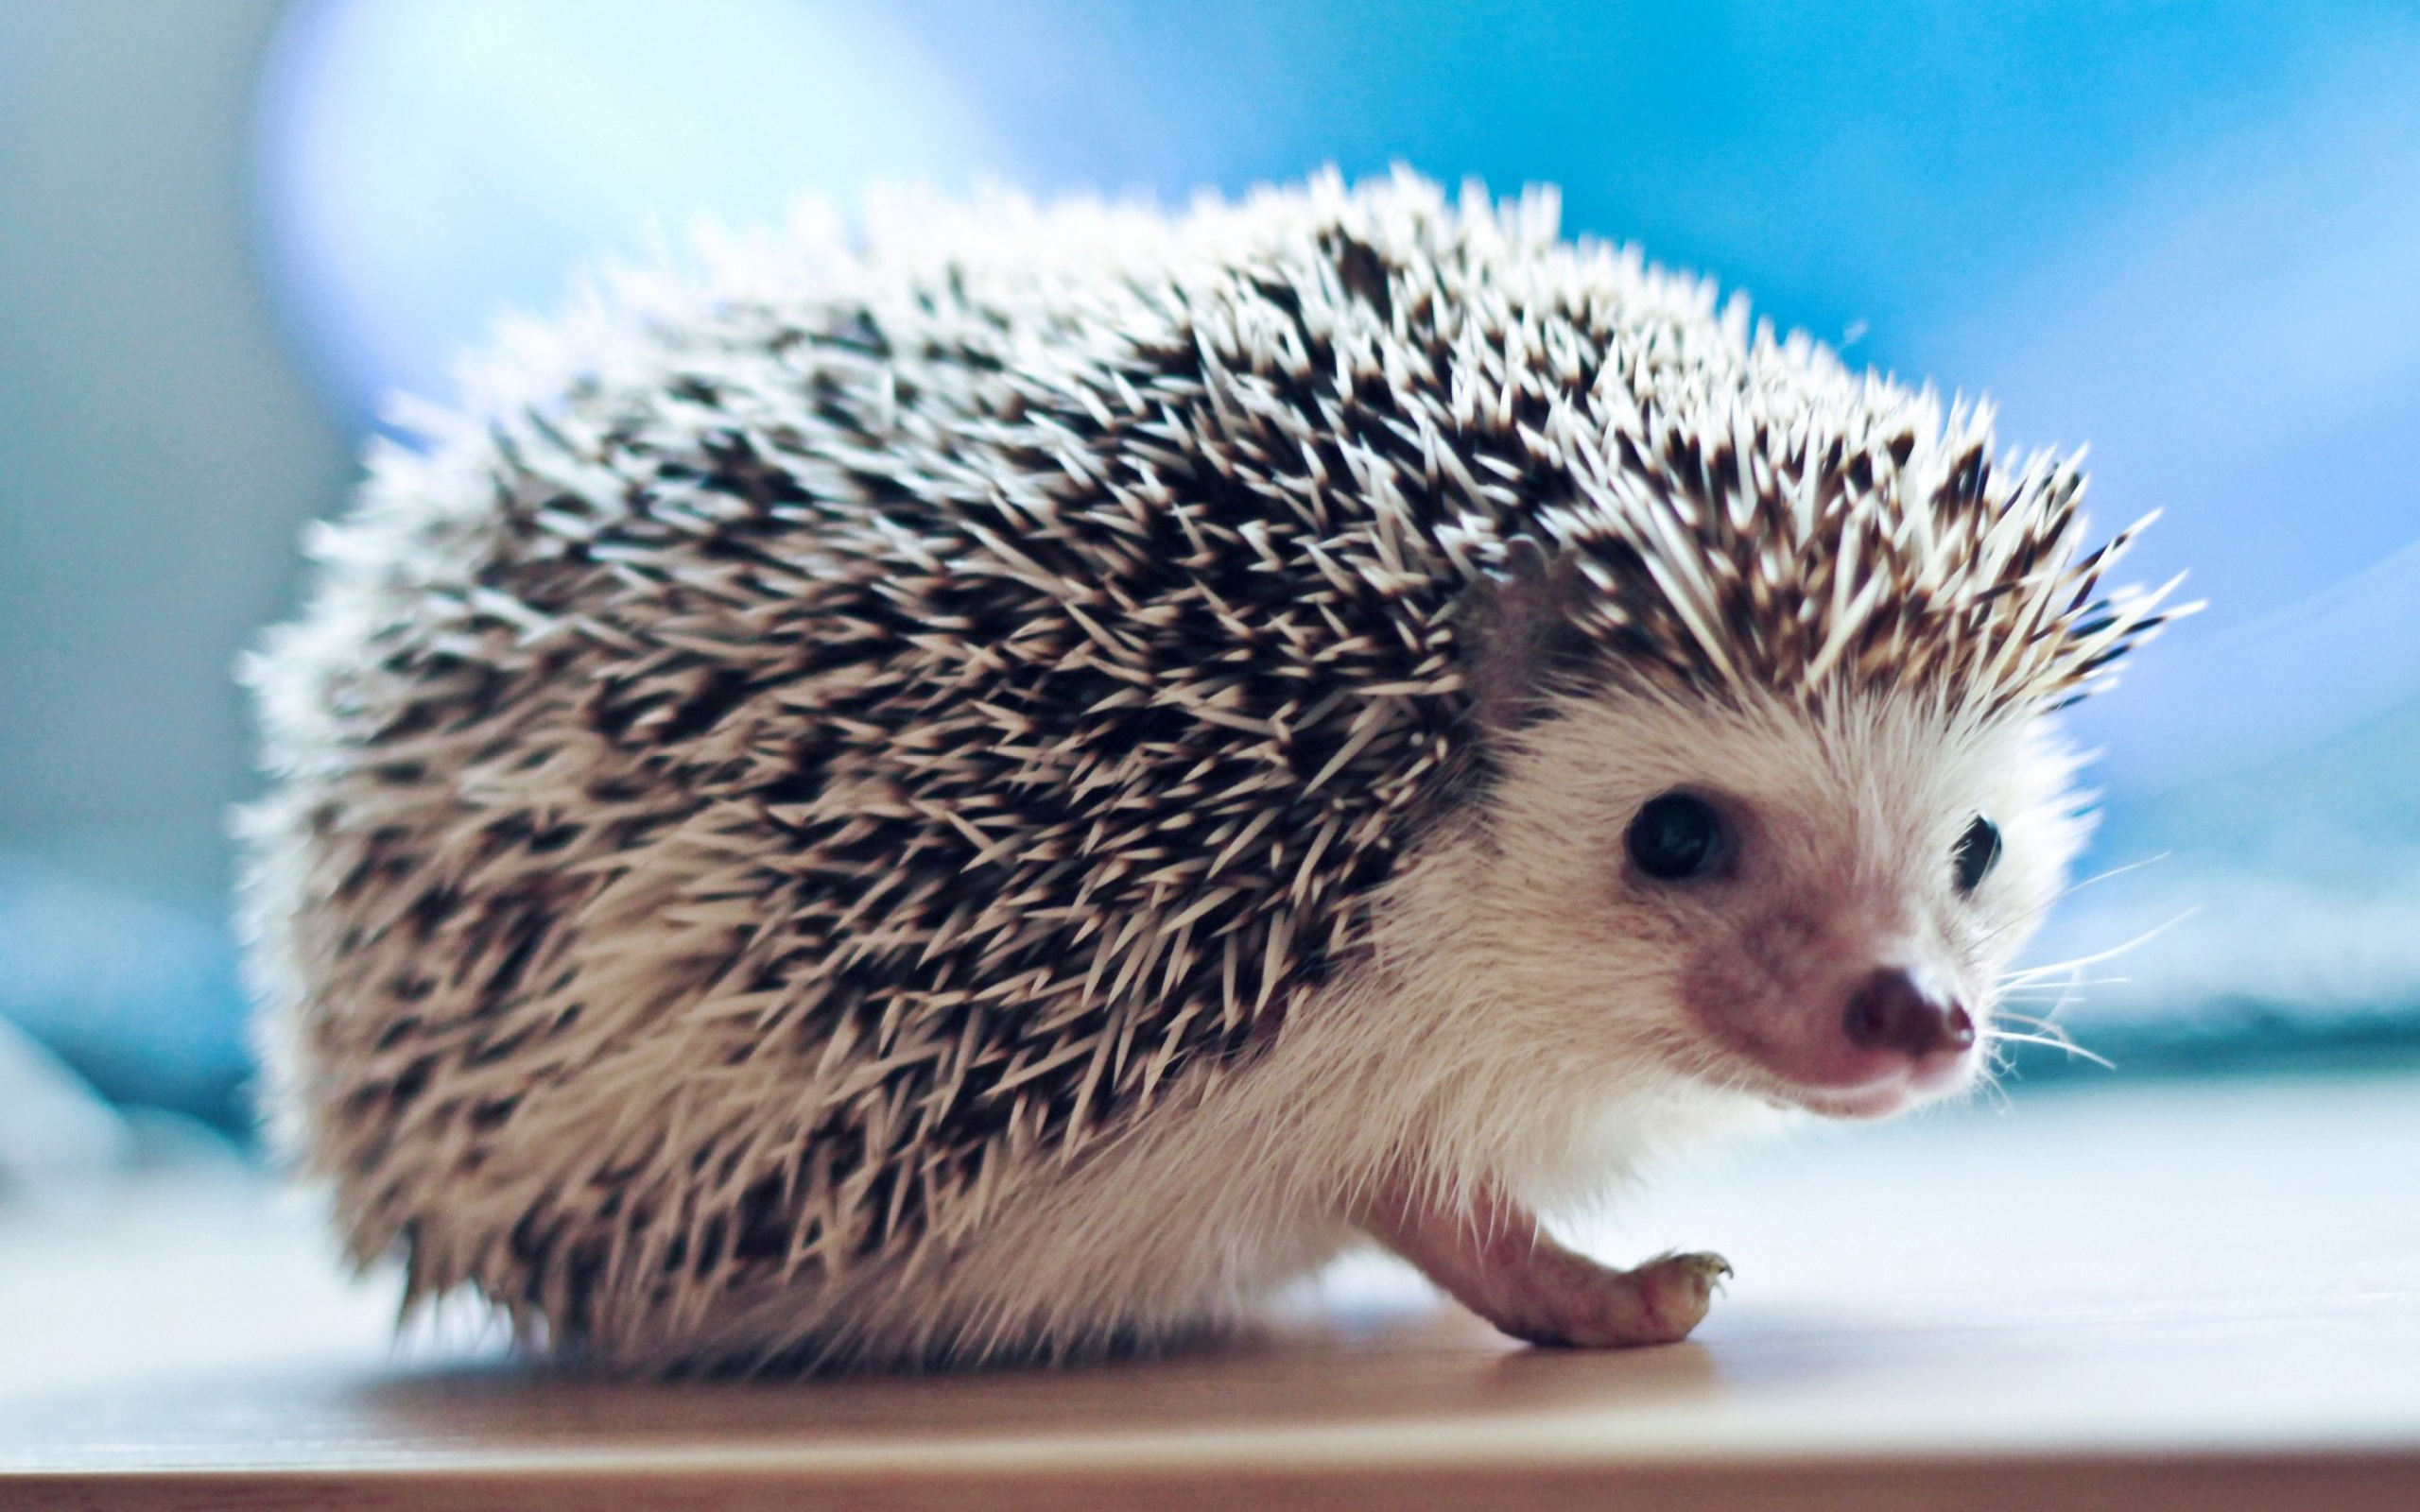 Cute Hedgehog wallpaper 2560x1600